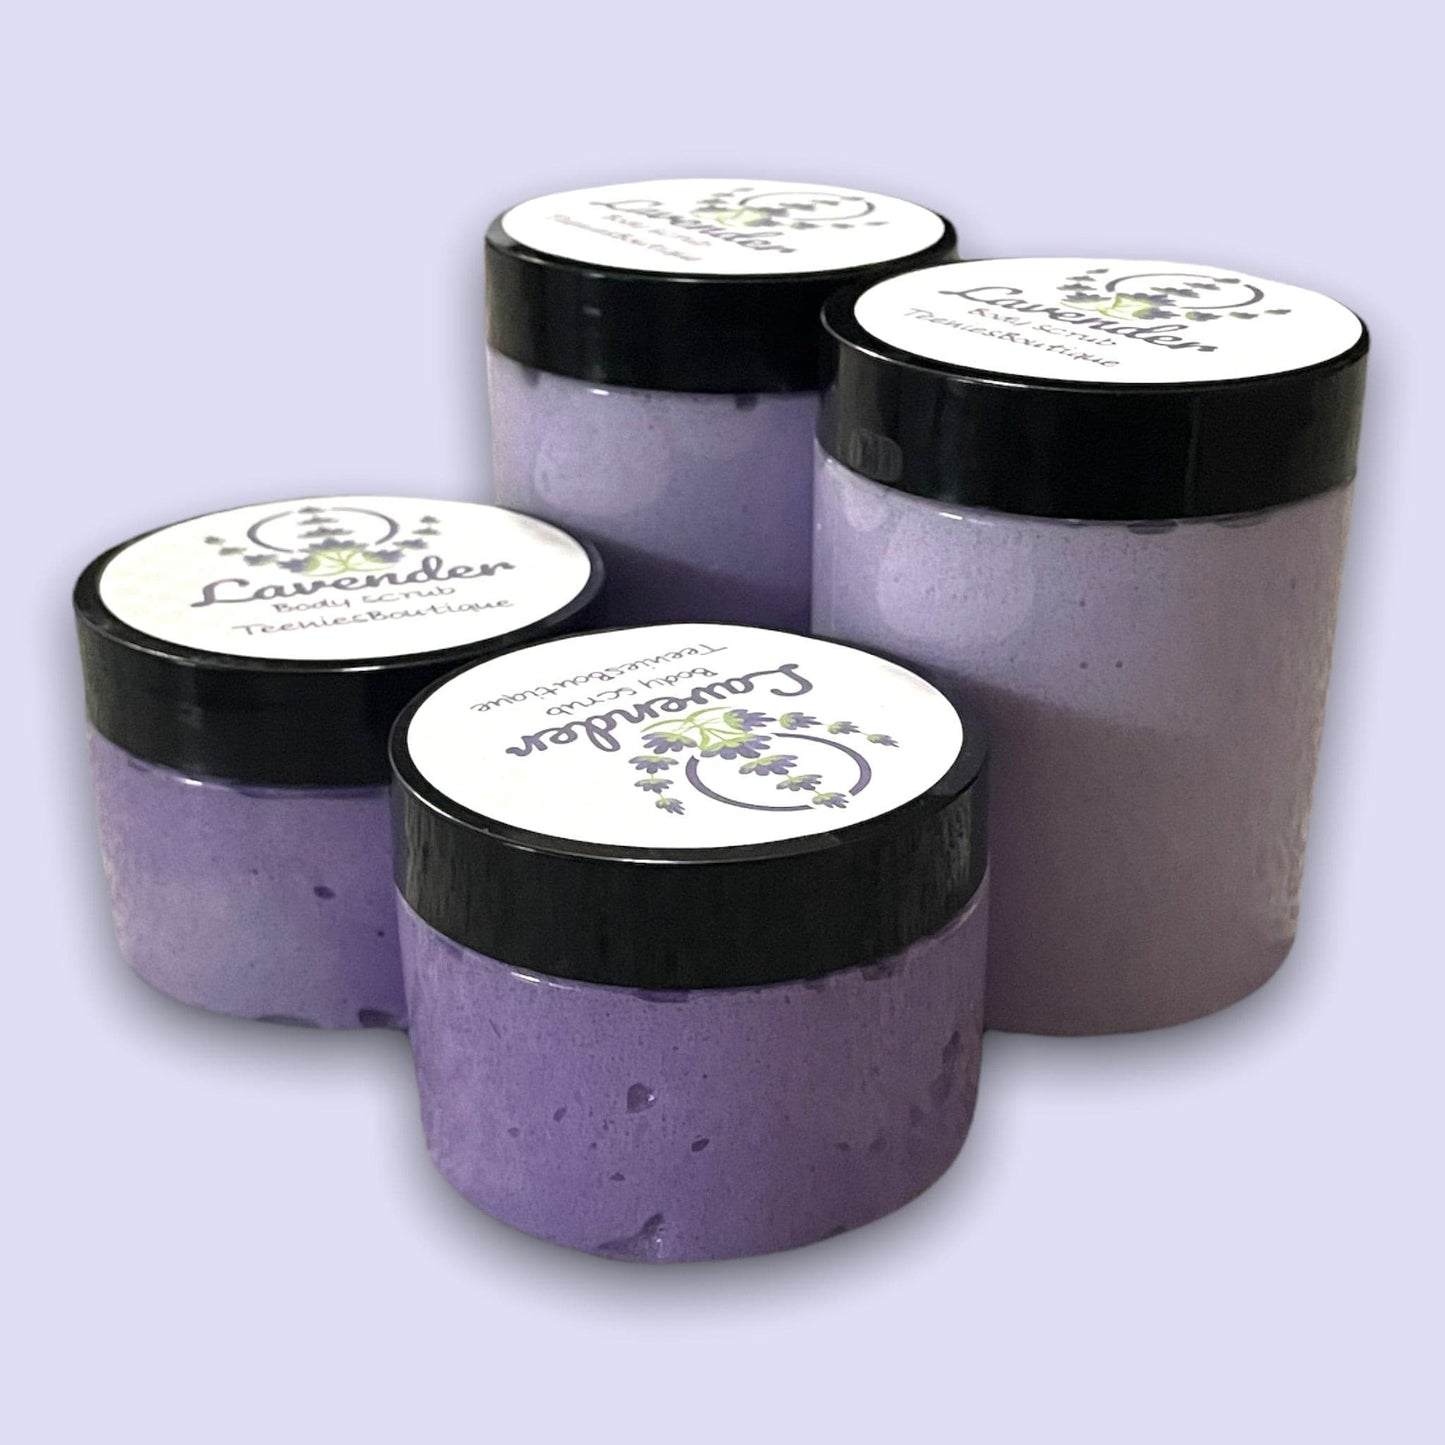 Foaming Lavender Body Scrub - Teenies Boutique 4oz Body Scrub